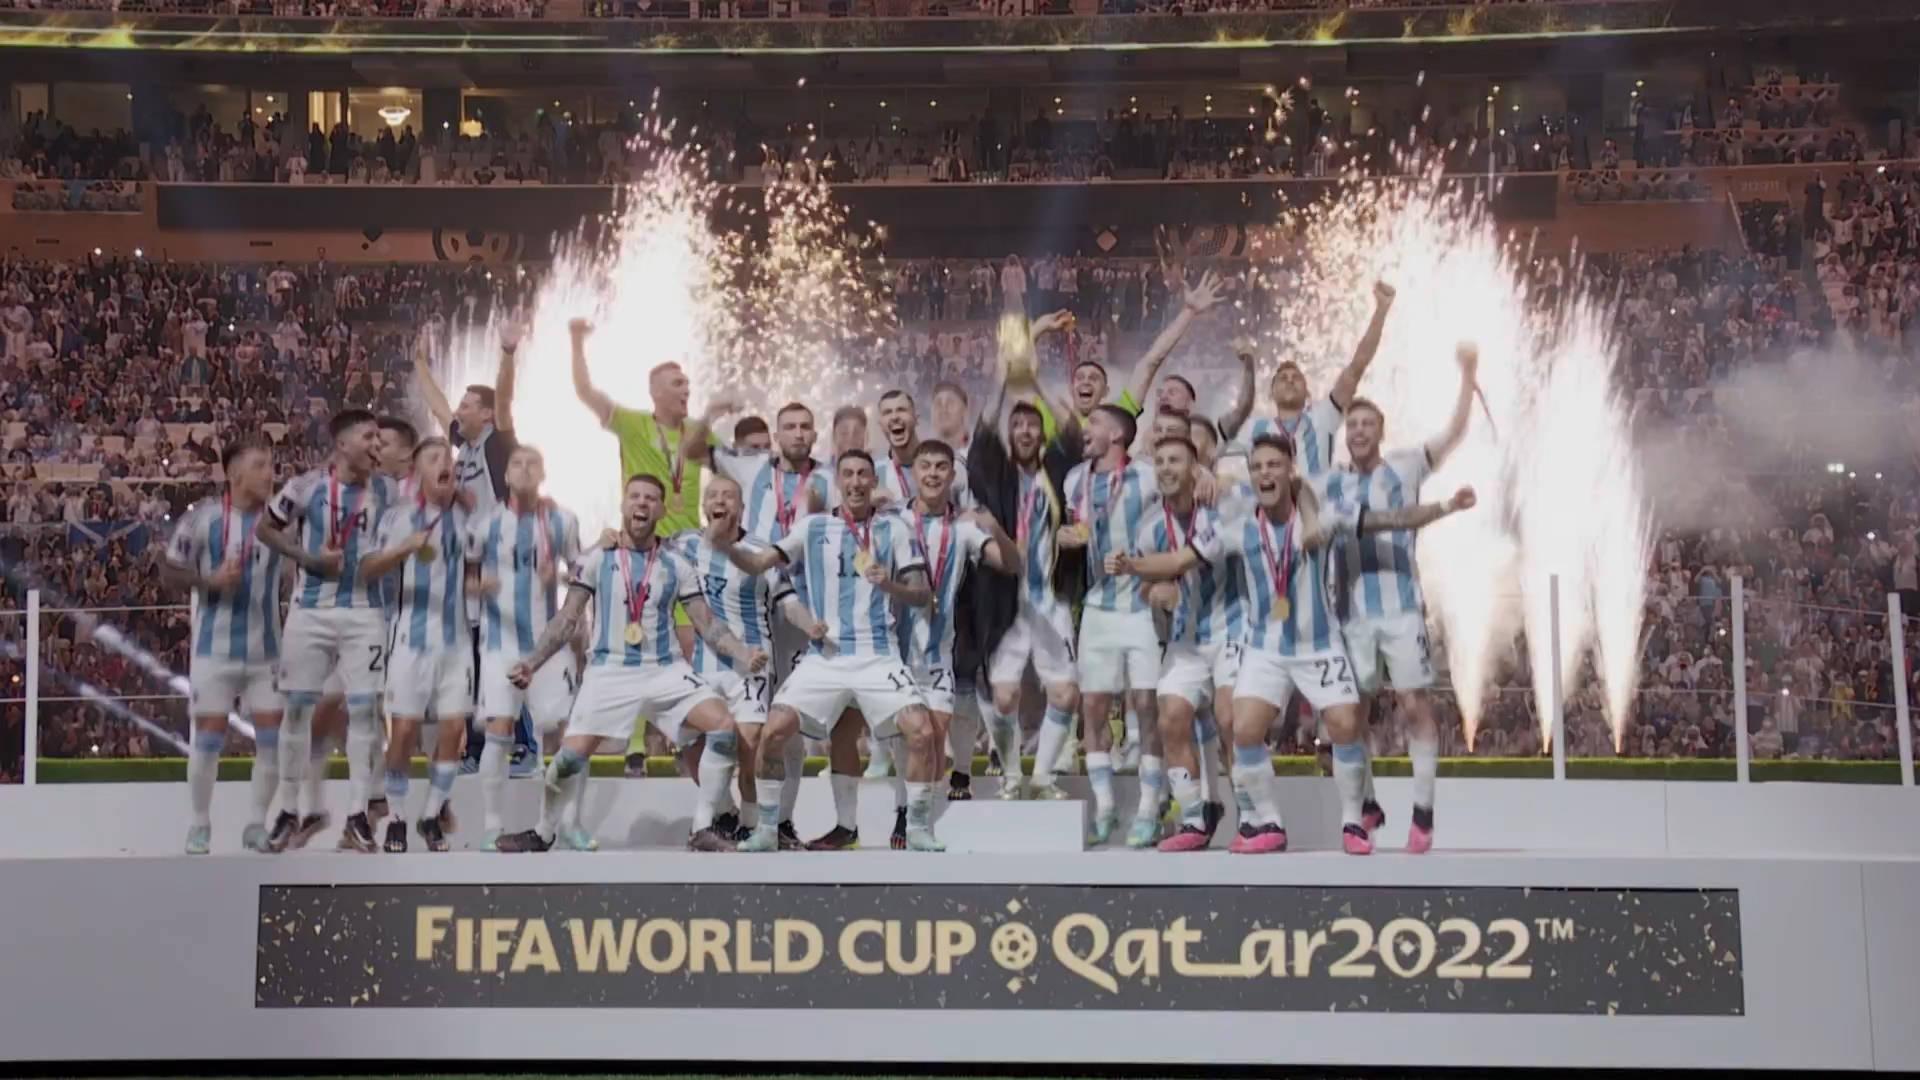 مراسم اهدا جام قهرمانی به تیم ملی آرژانتین + ویدئو